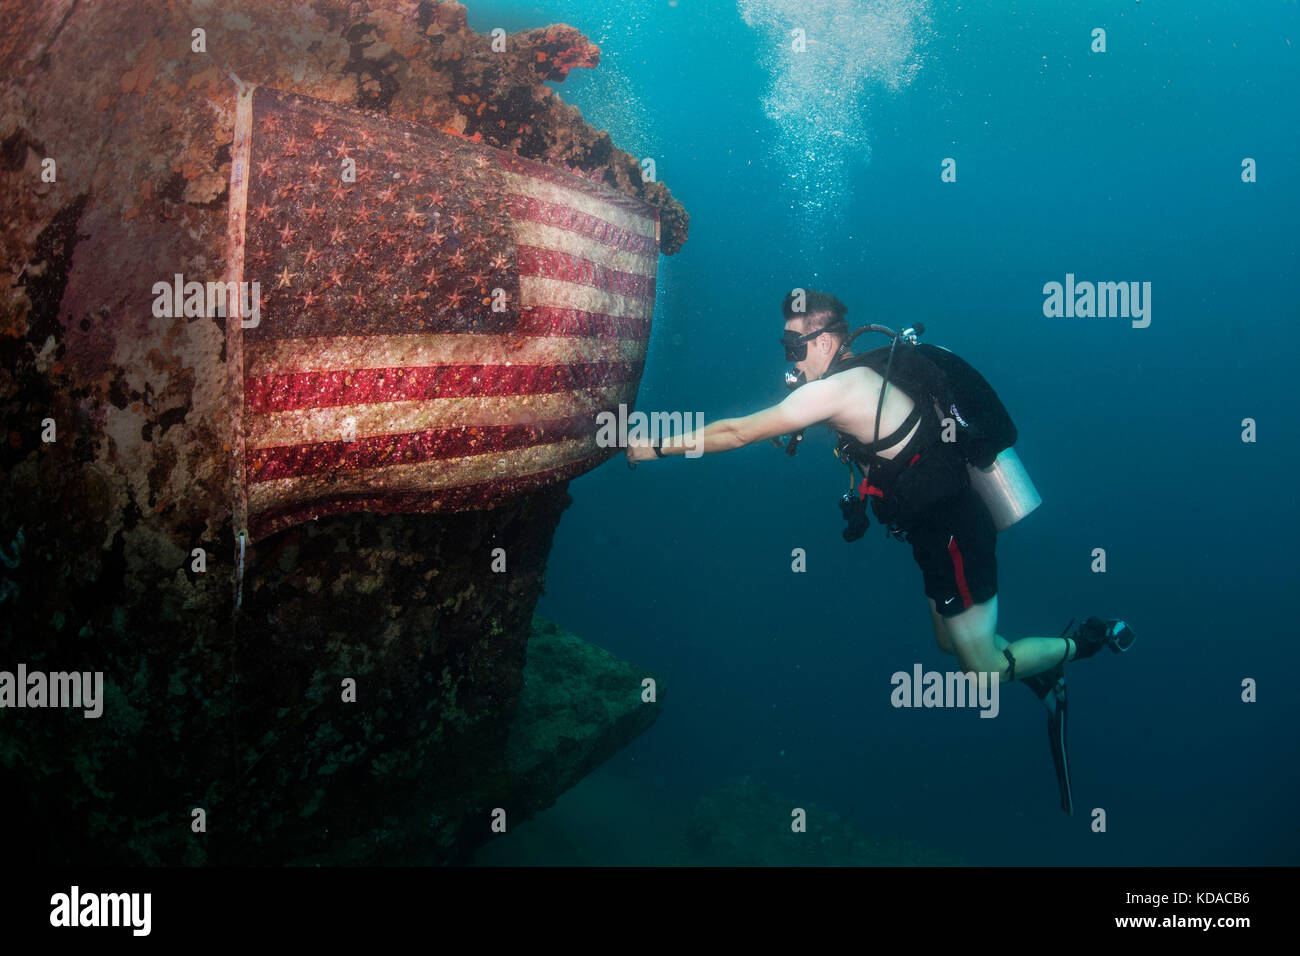 Ein U.S. Navy sailor behebt die amerikanische Flagge auf den amerikanischen Tanker bei einem Tauchgang in der Nähe der Militärbasis guam Juni 21 Hung, 2017 in Apra Harbor, Guam. Die amerikanischen Tanker ist eine versunkene konkrete Lastkahn, der während des Zweiten Weltkrieges zu transportieren war Stockfoto